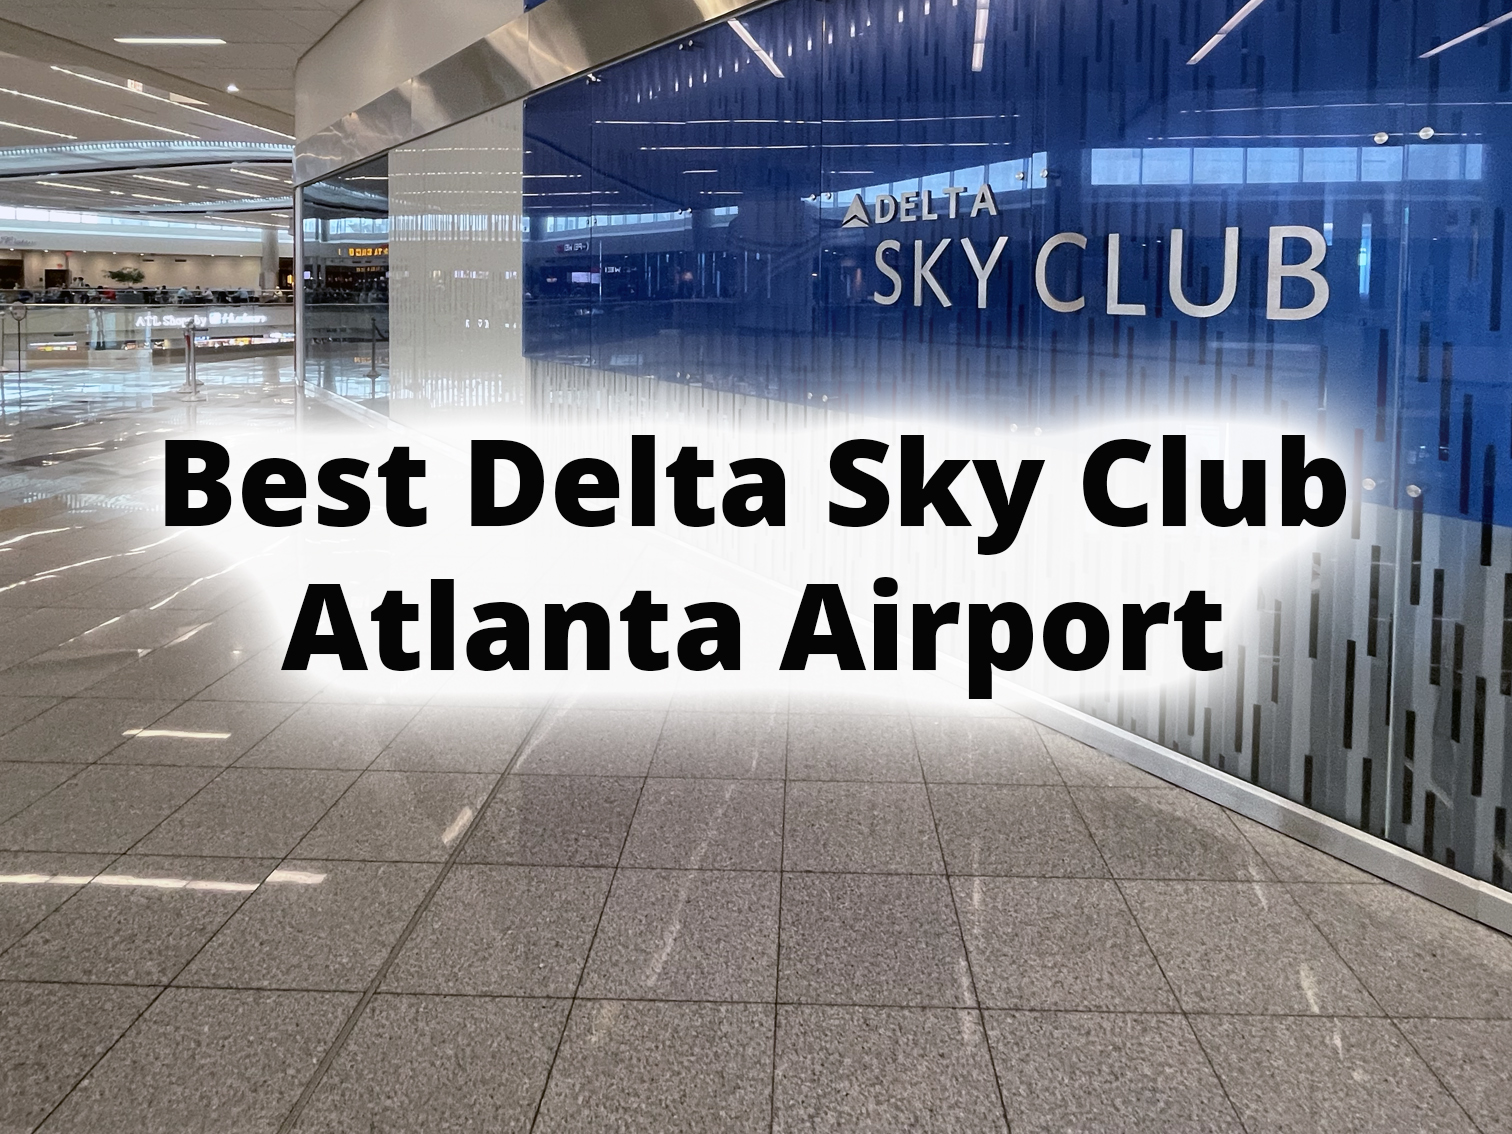 Delta Sky Club in Atlanta